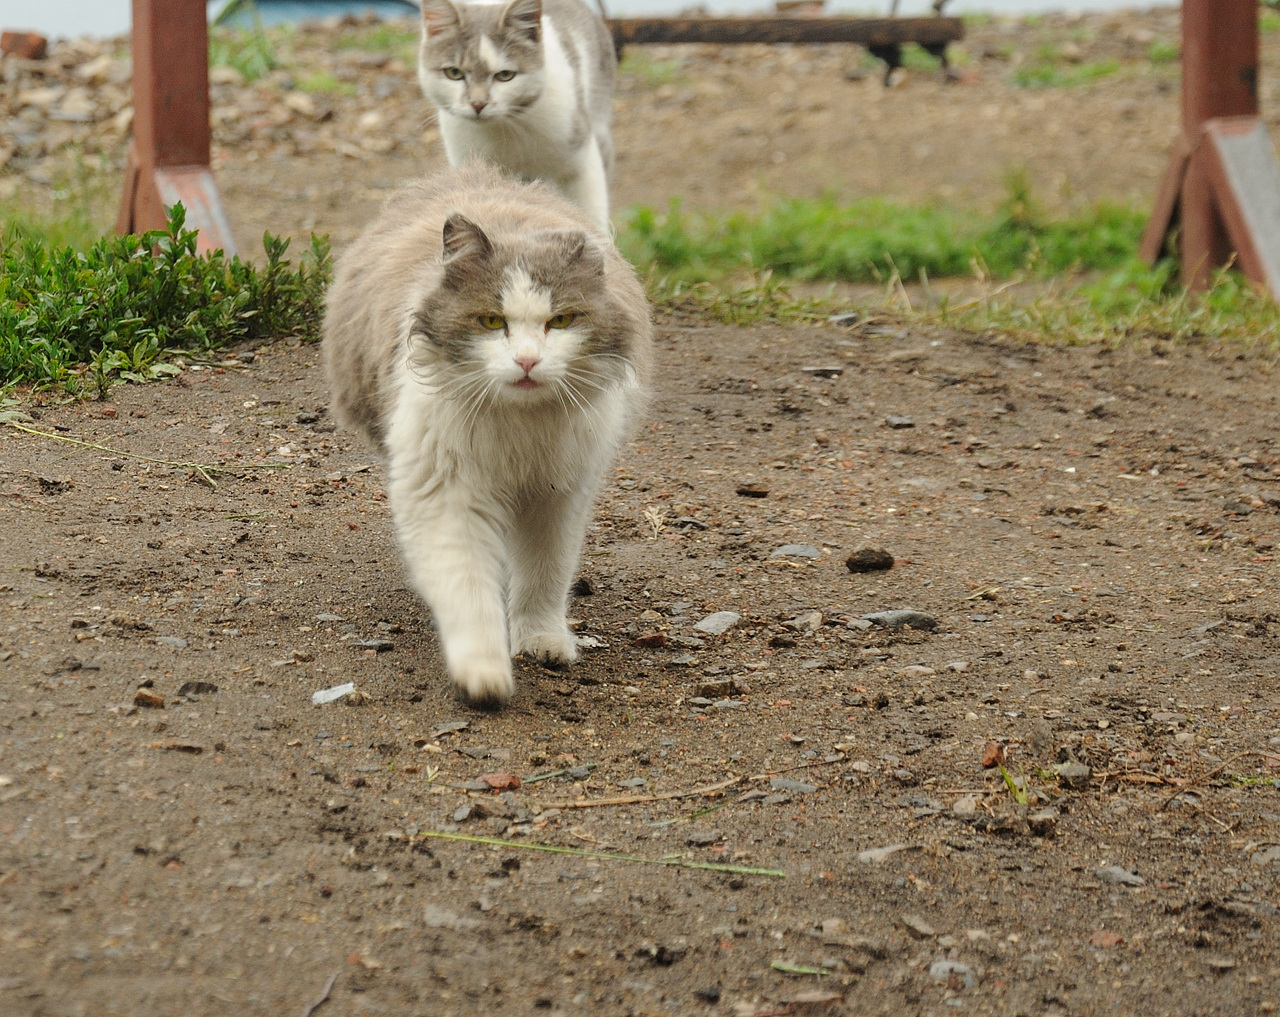 Полный кадр.<br /><br />Байкальский кот. <br />&amp;quot;Слышь, семки есть? А если проверю? А ты ваще кого на районе знаешь?&amp;quot;